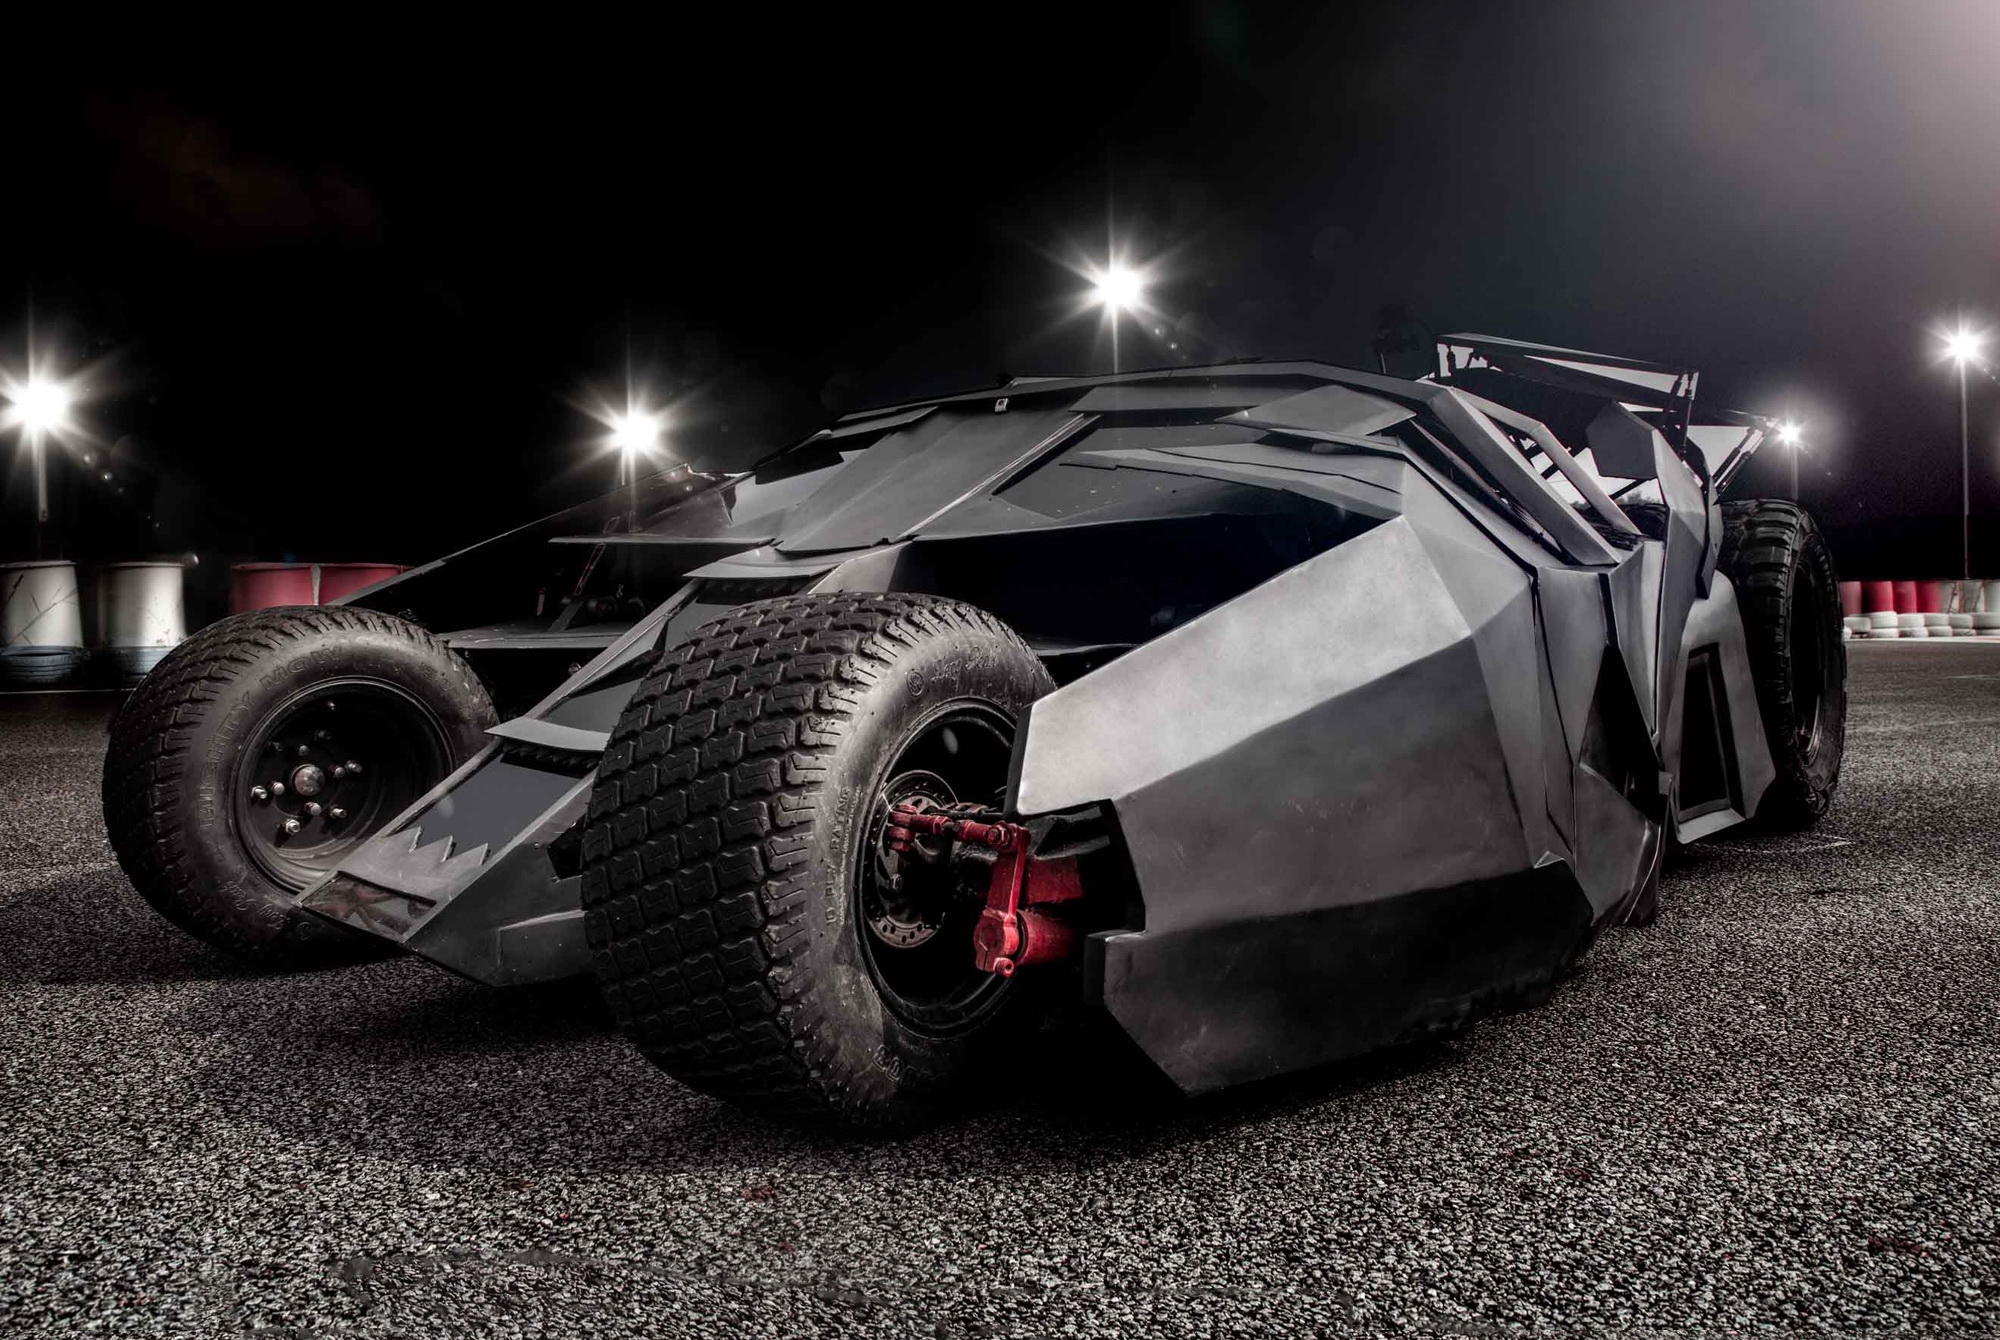 นี่คือ Batmobile พลังไฟฟ้าคันแรกในโลก และคุณสามารถซื้อมันได้แล้ว!!